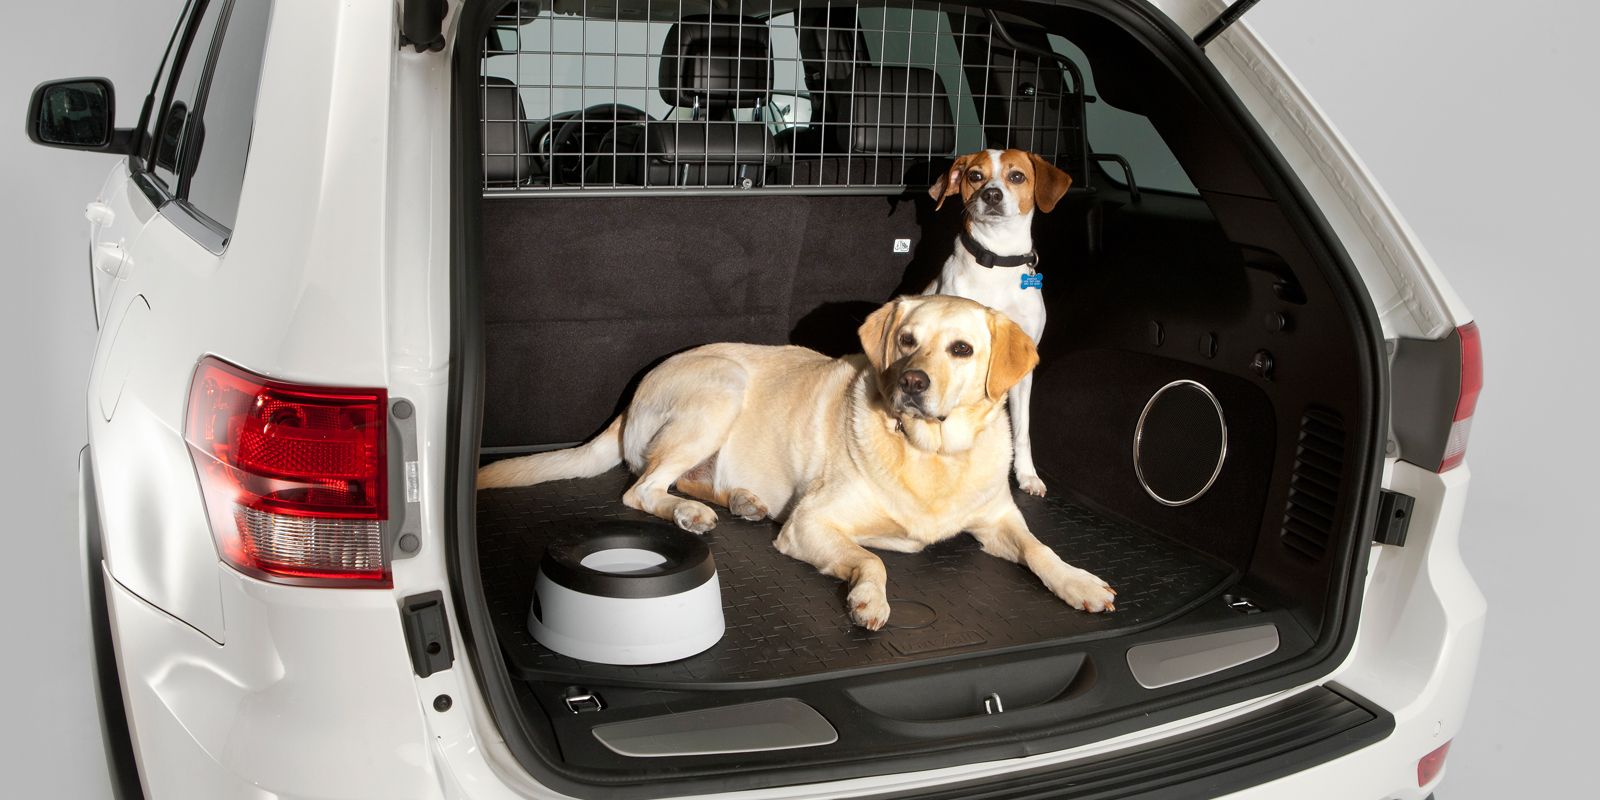 MULTAS DGT | La DGT te multará si llevas así a tu perro en el coche